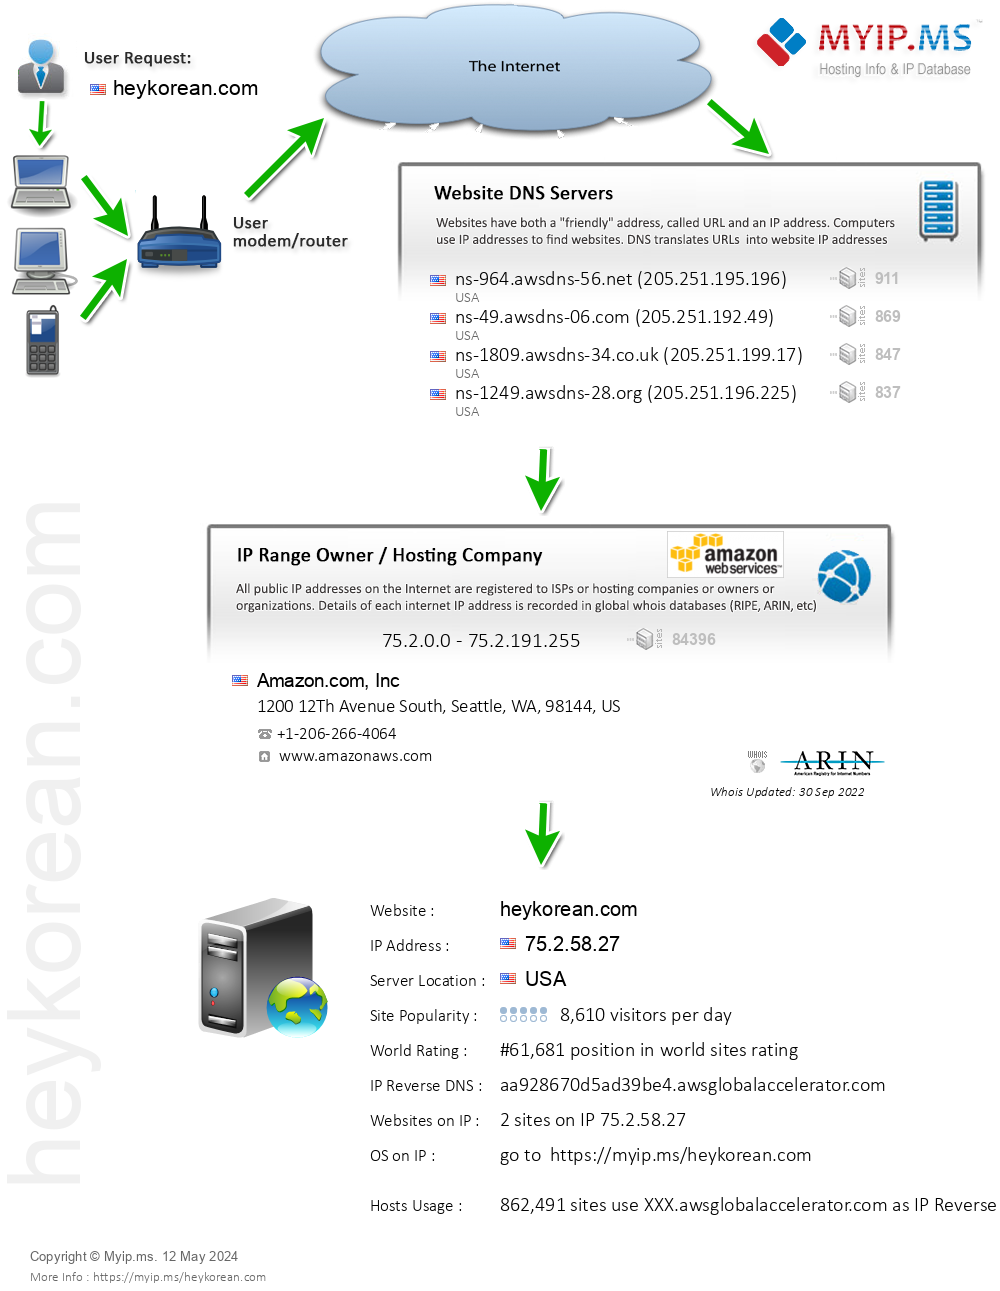 Heykorean.com - Website Hosting Visual IP Diagram